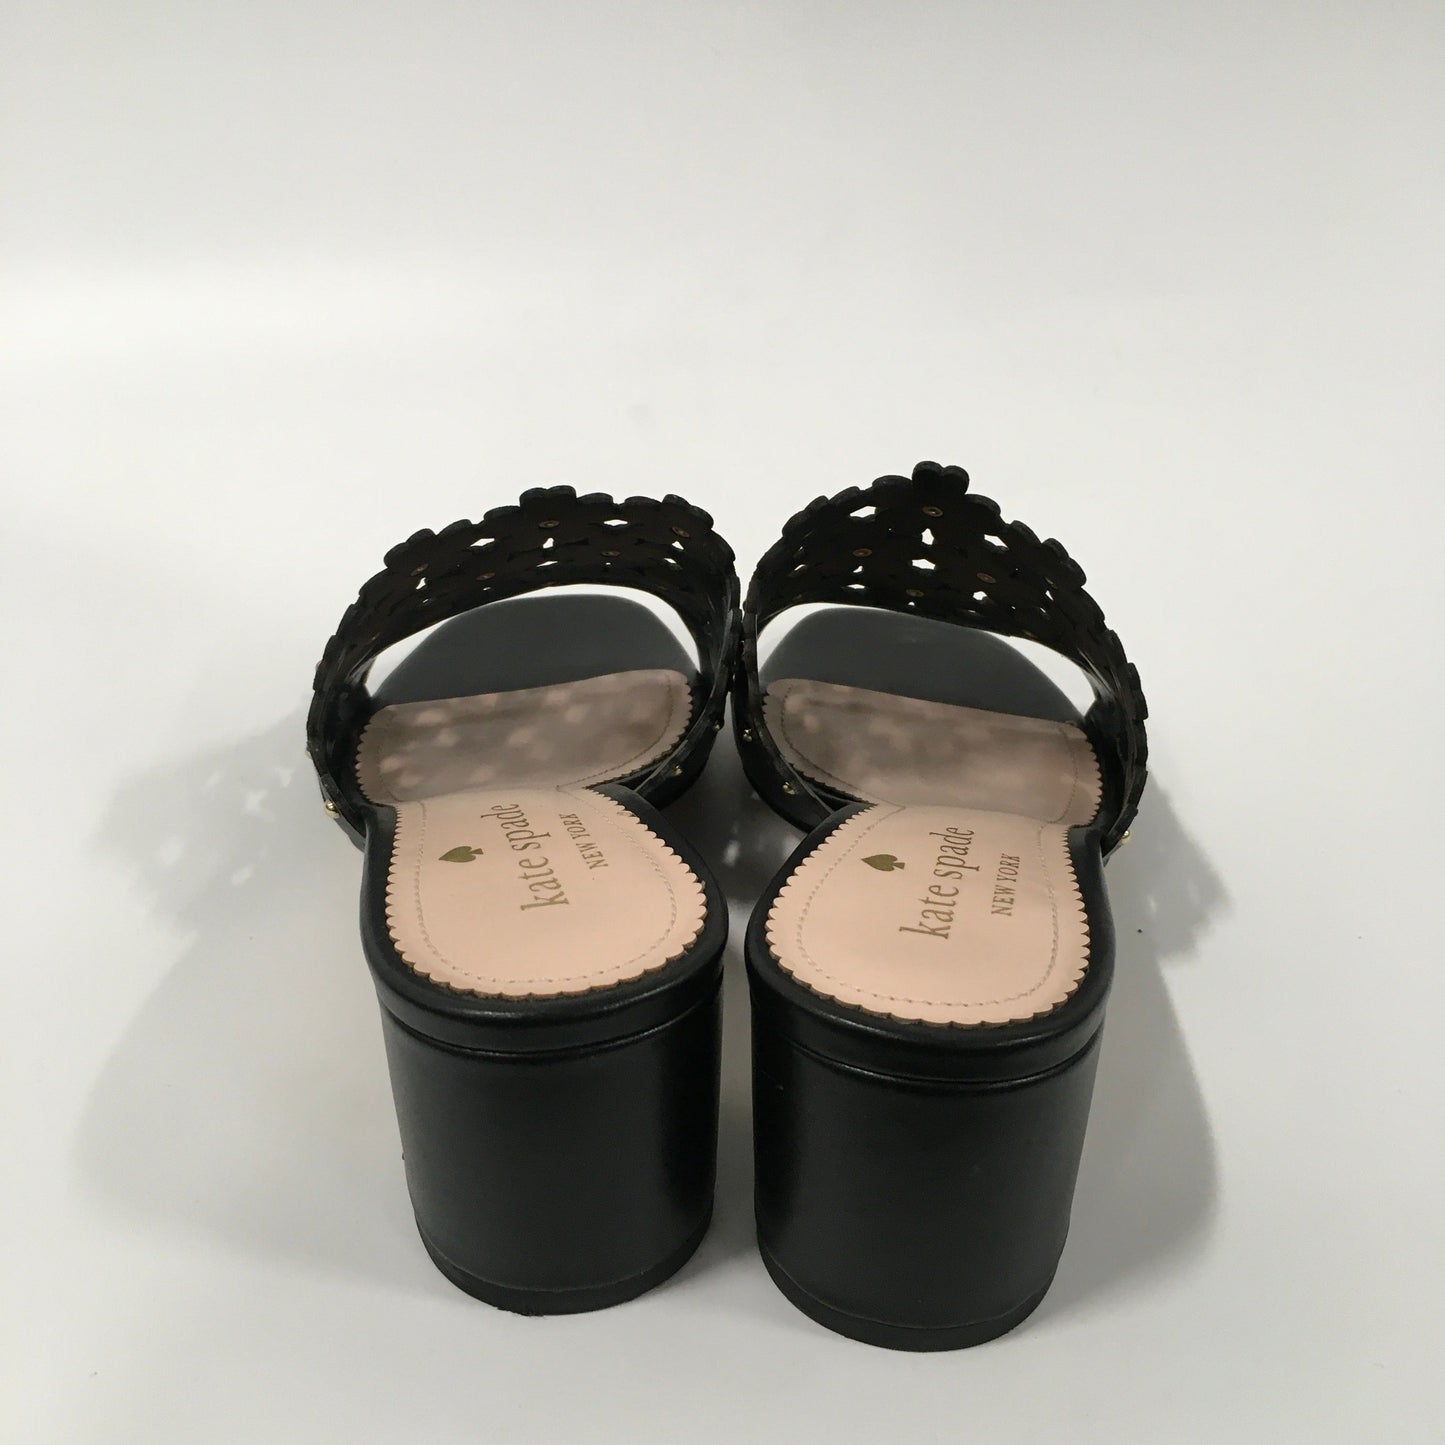 Shoes Heels Kitten By Kate Spade  Size: 6